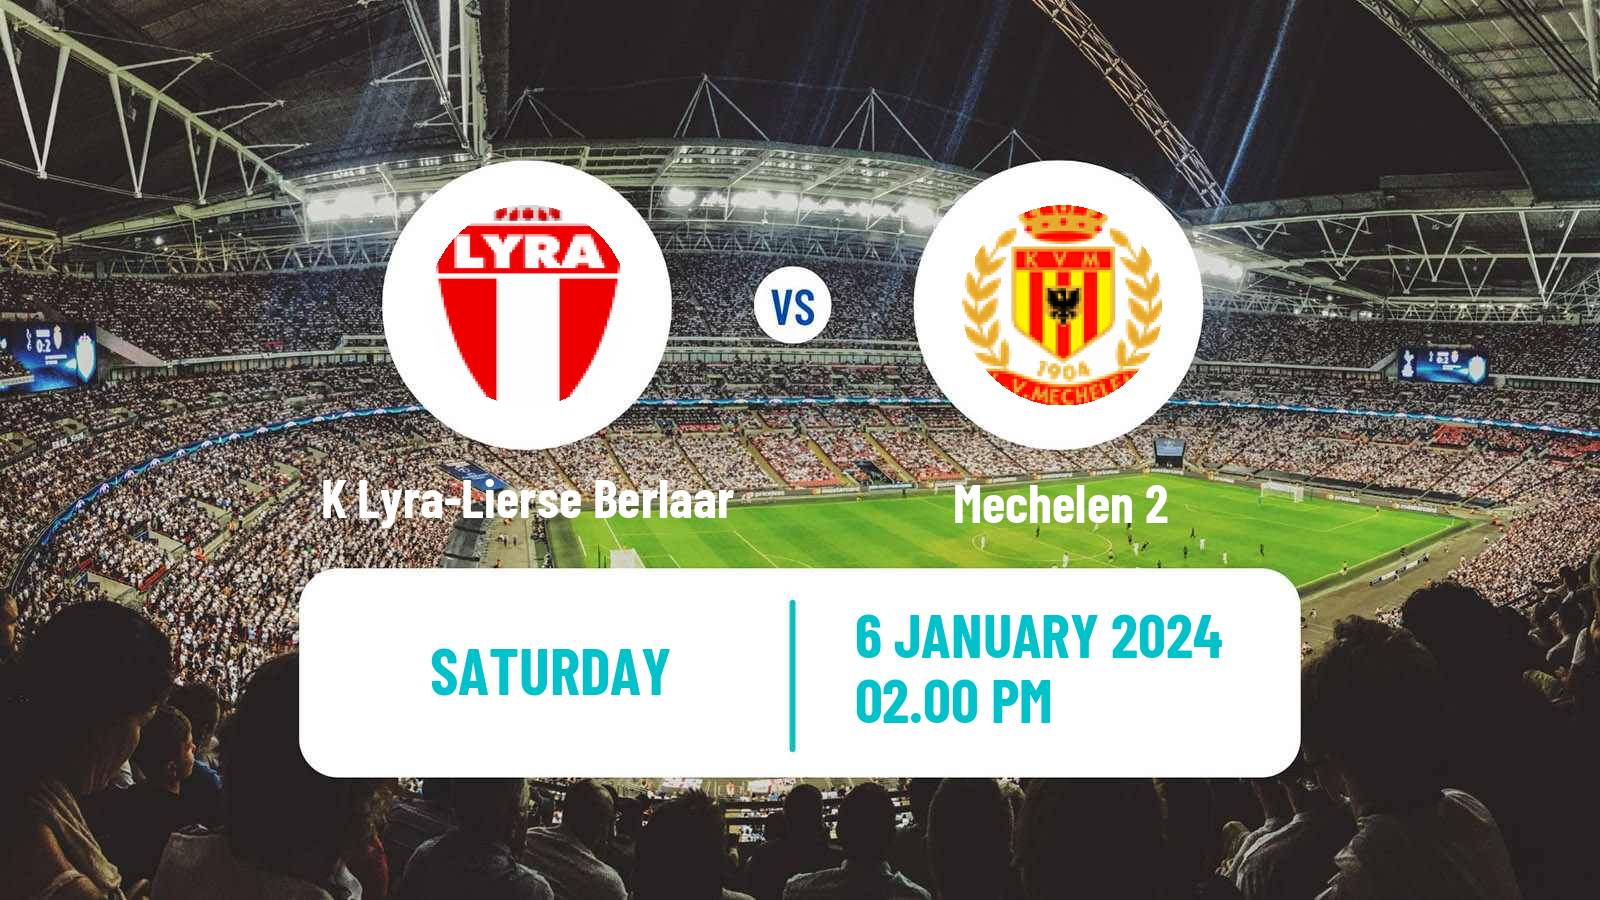 Soccer Belgian Second Amateur Division Group B K Lyra-Lierse Berlaar - Mechelen 2